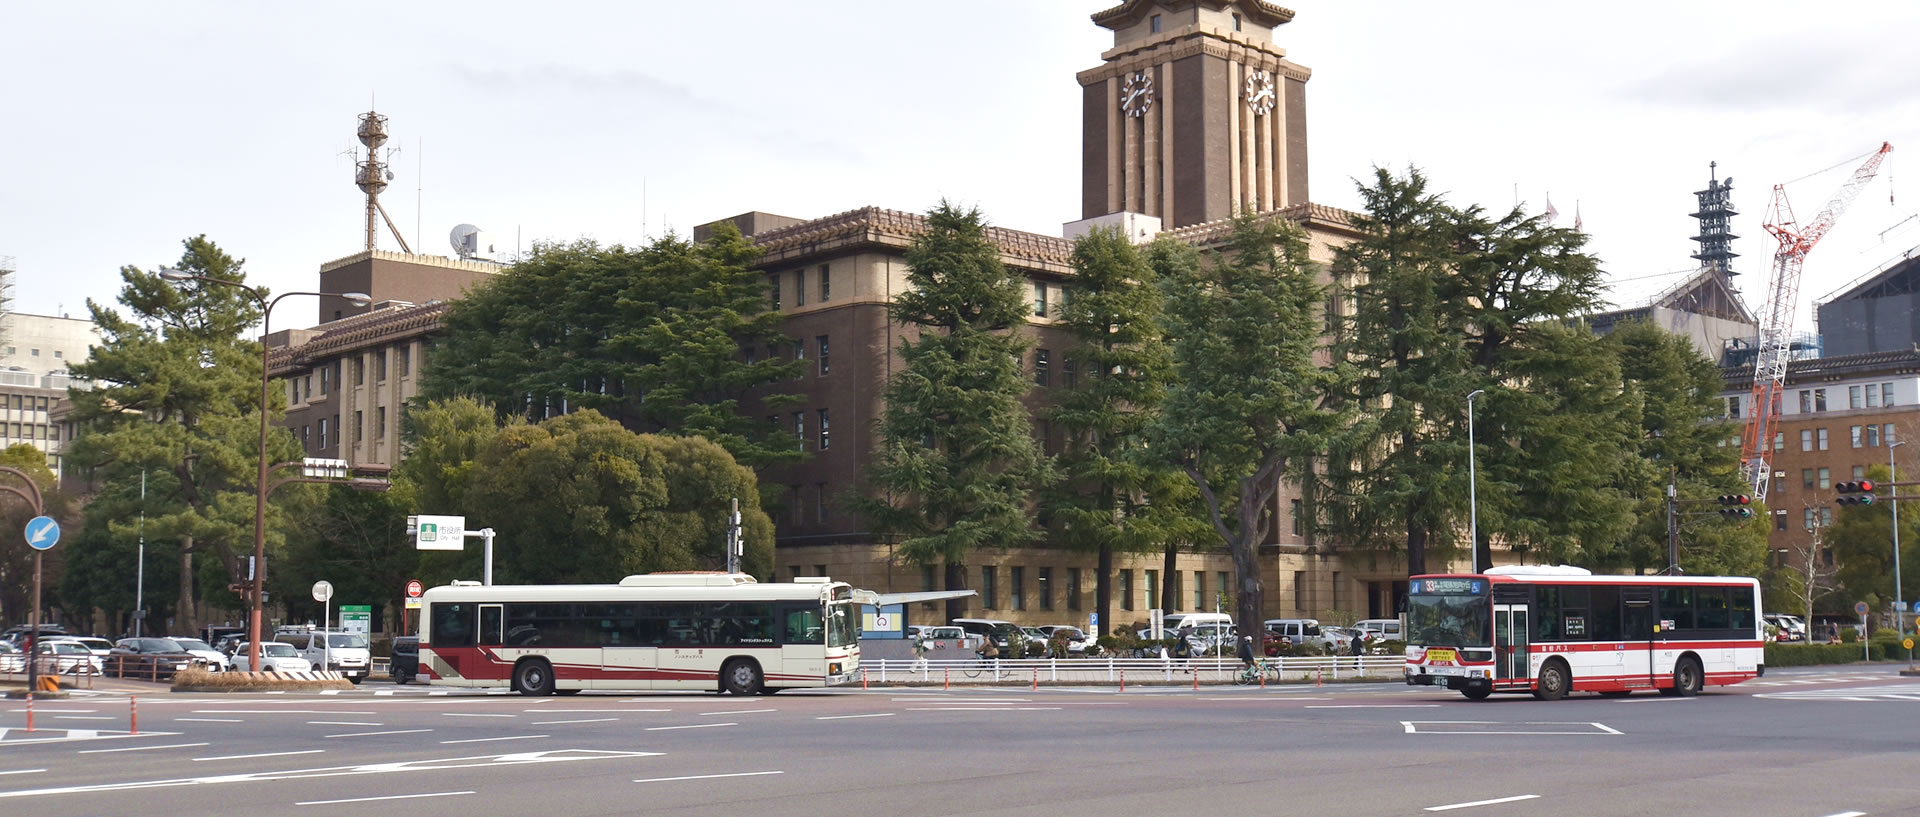 名古屋市の全景と名鉄バスの車体